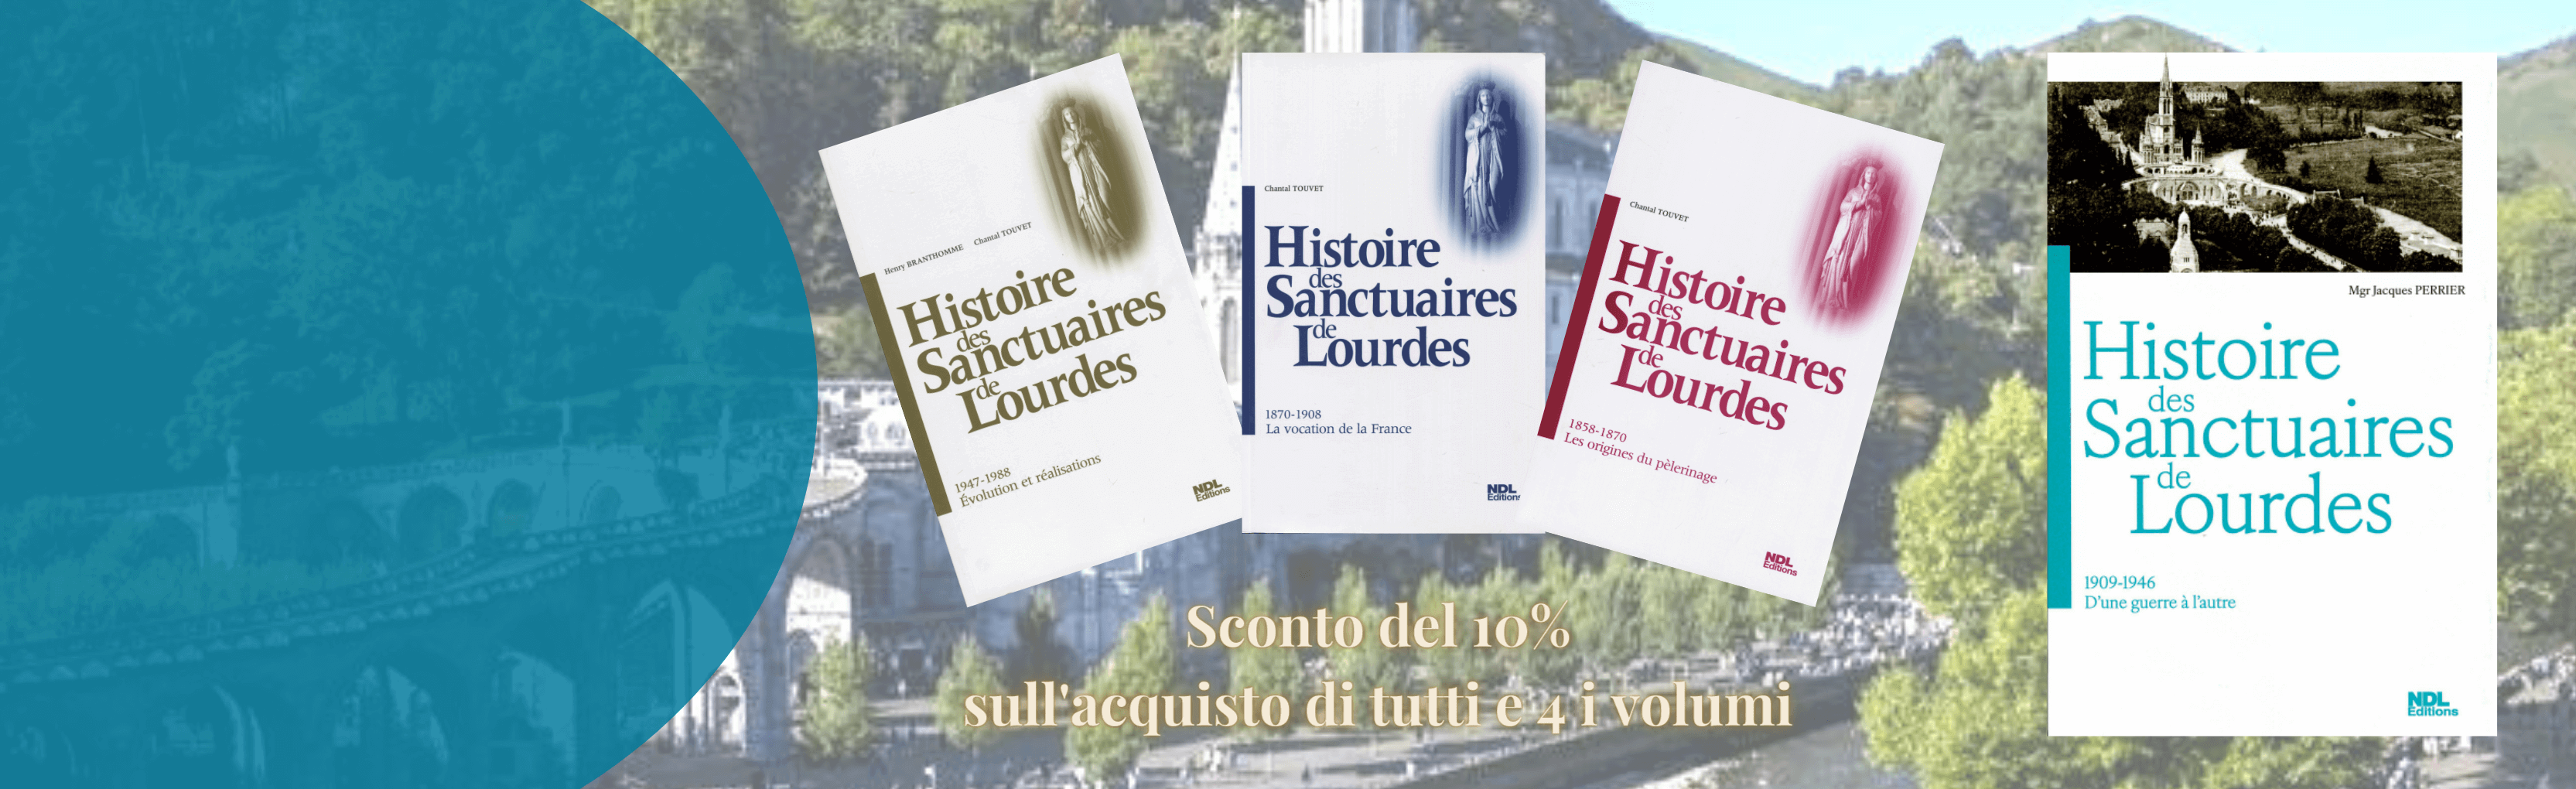 Striscione che annuncia la pubblicazione del quarto volume della serie, Storia dei santuari di Lourdes